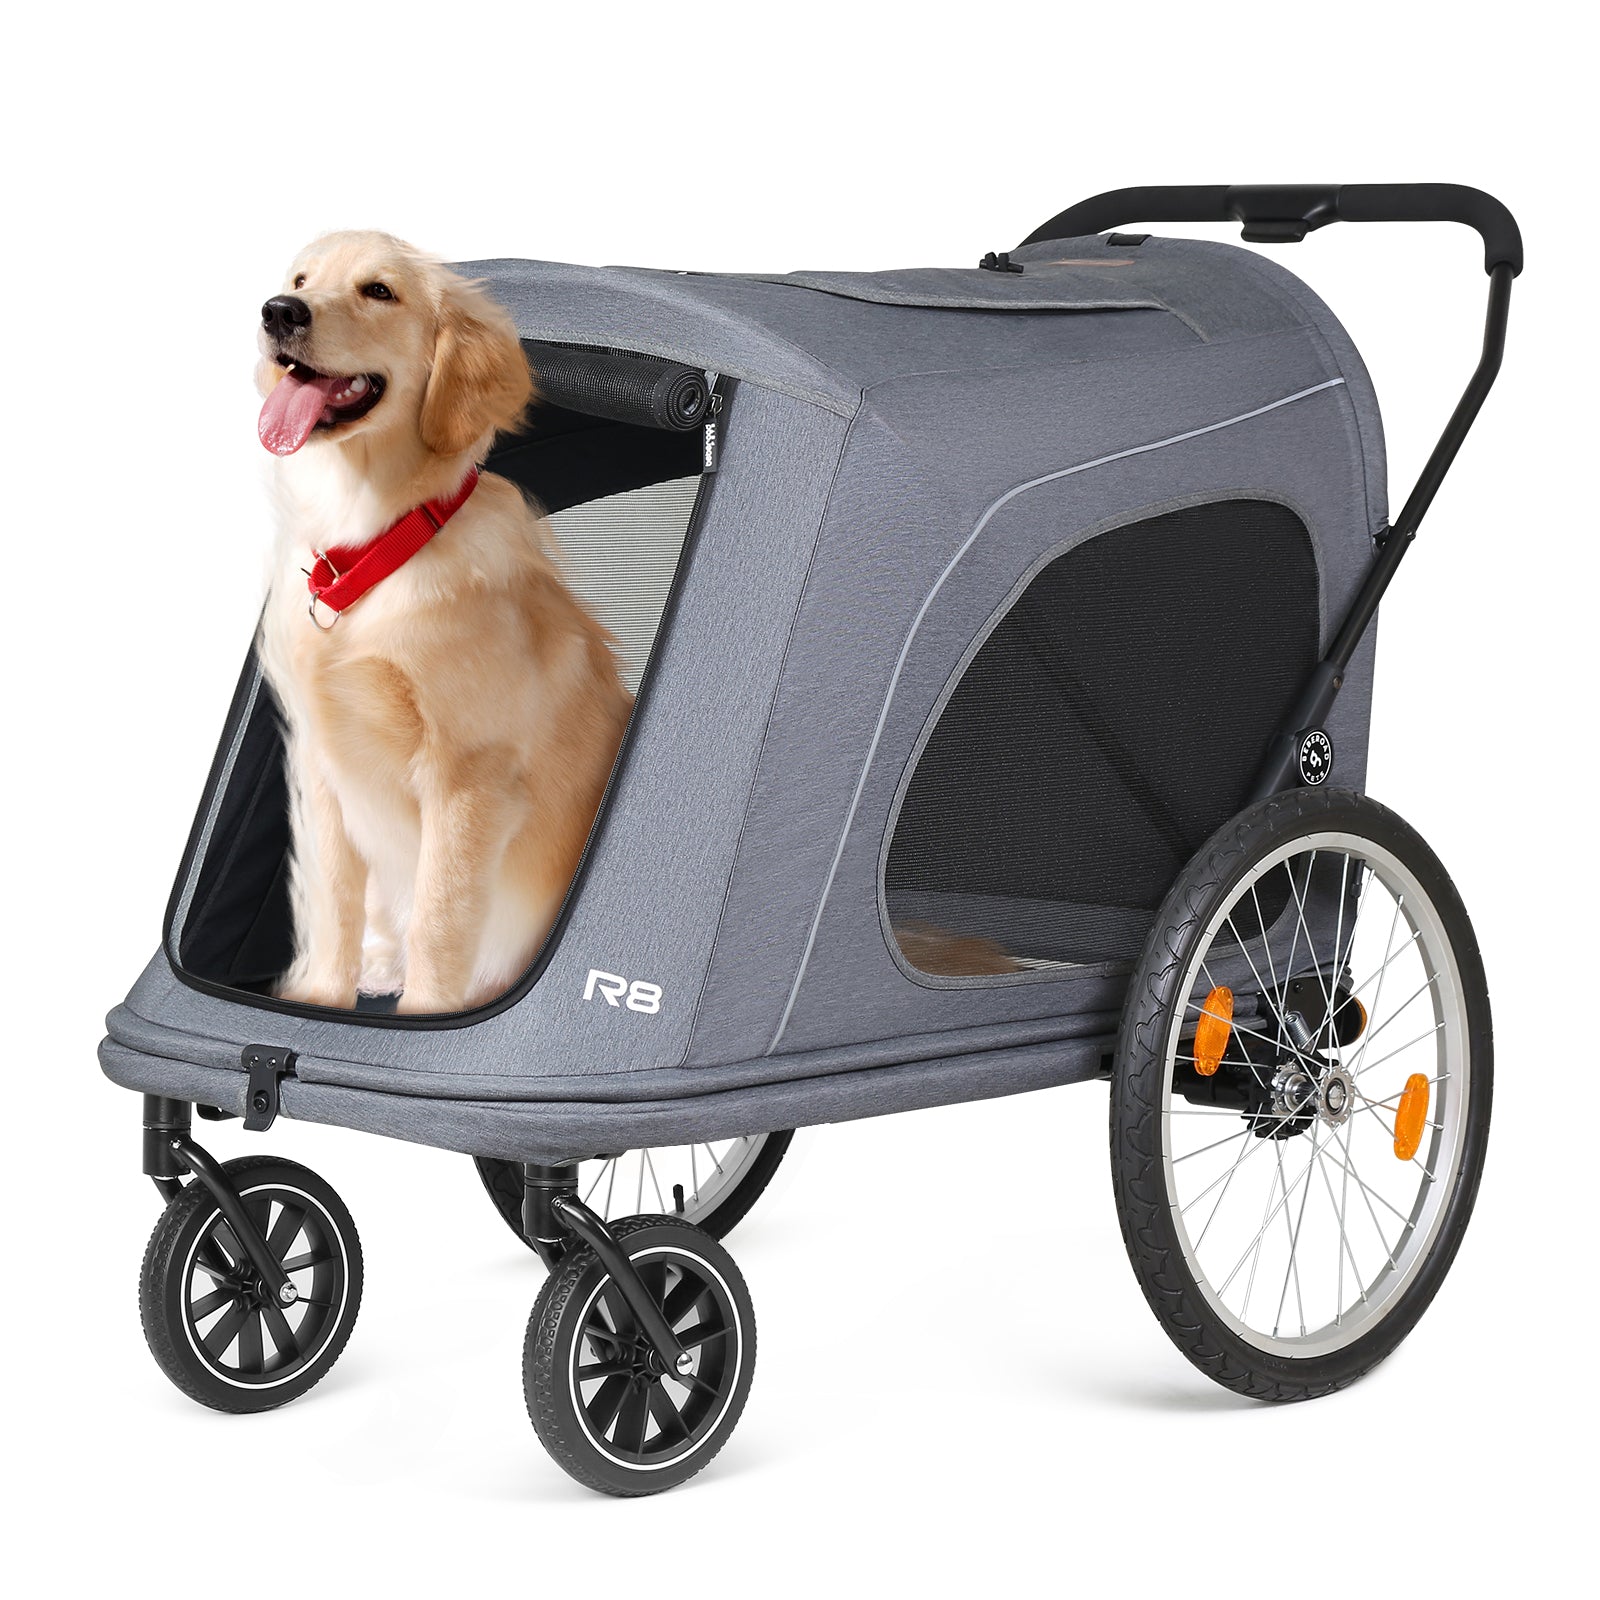 R8 Pro Luxury 4-Wheel Foldable Pet Stroller